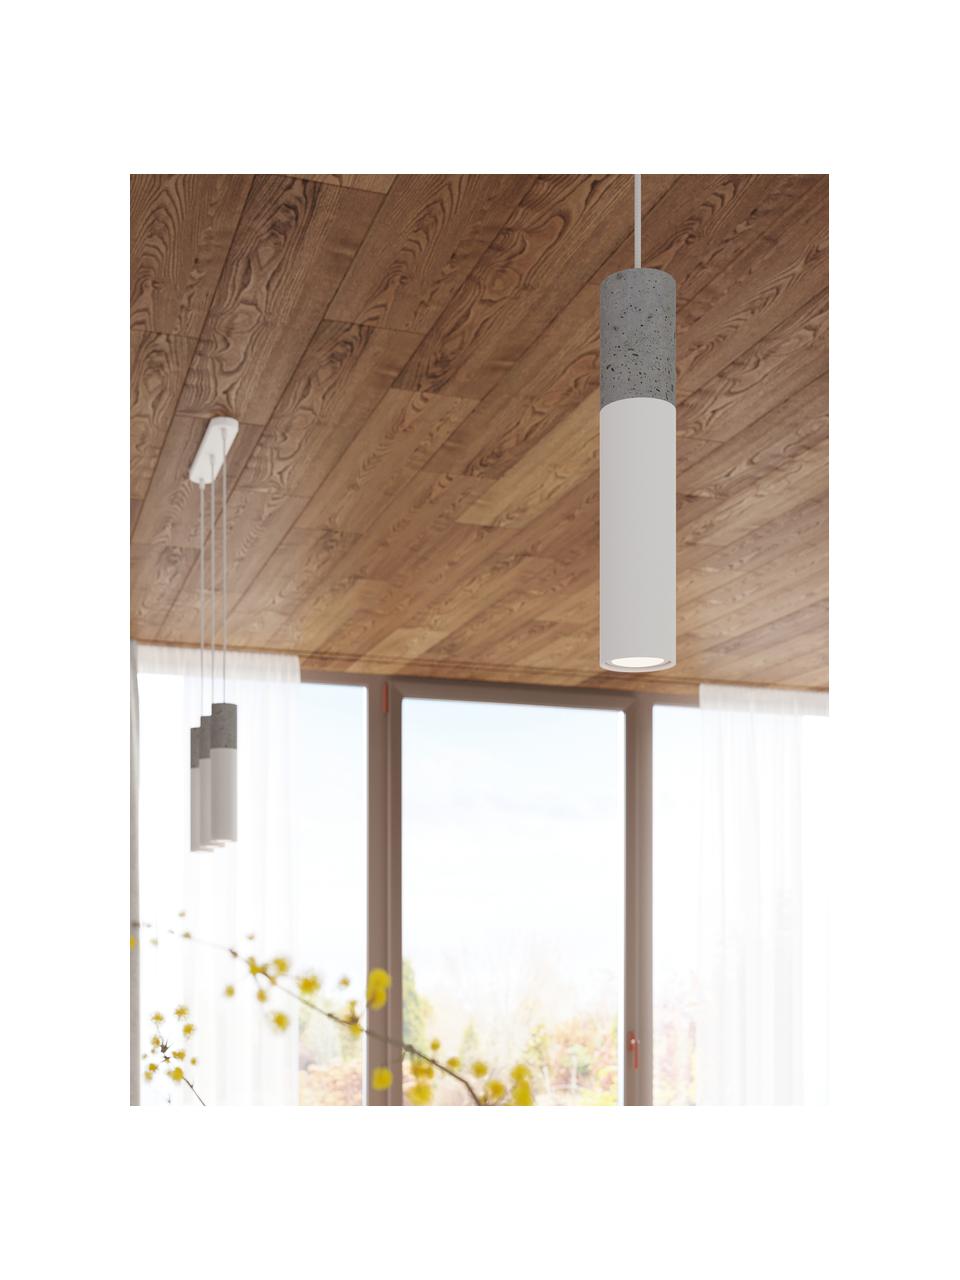 Kleine hanglamp Edo van beton, Lampenkap: beton, staal, Grijs, wit, Ø 6 x H 30 cm